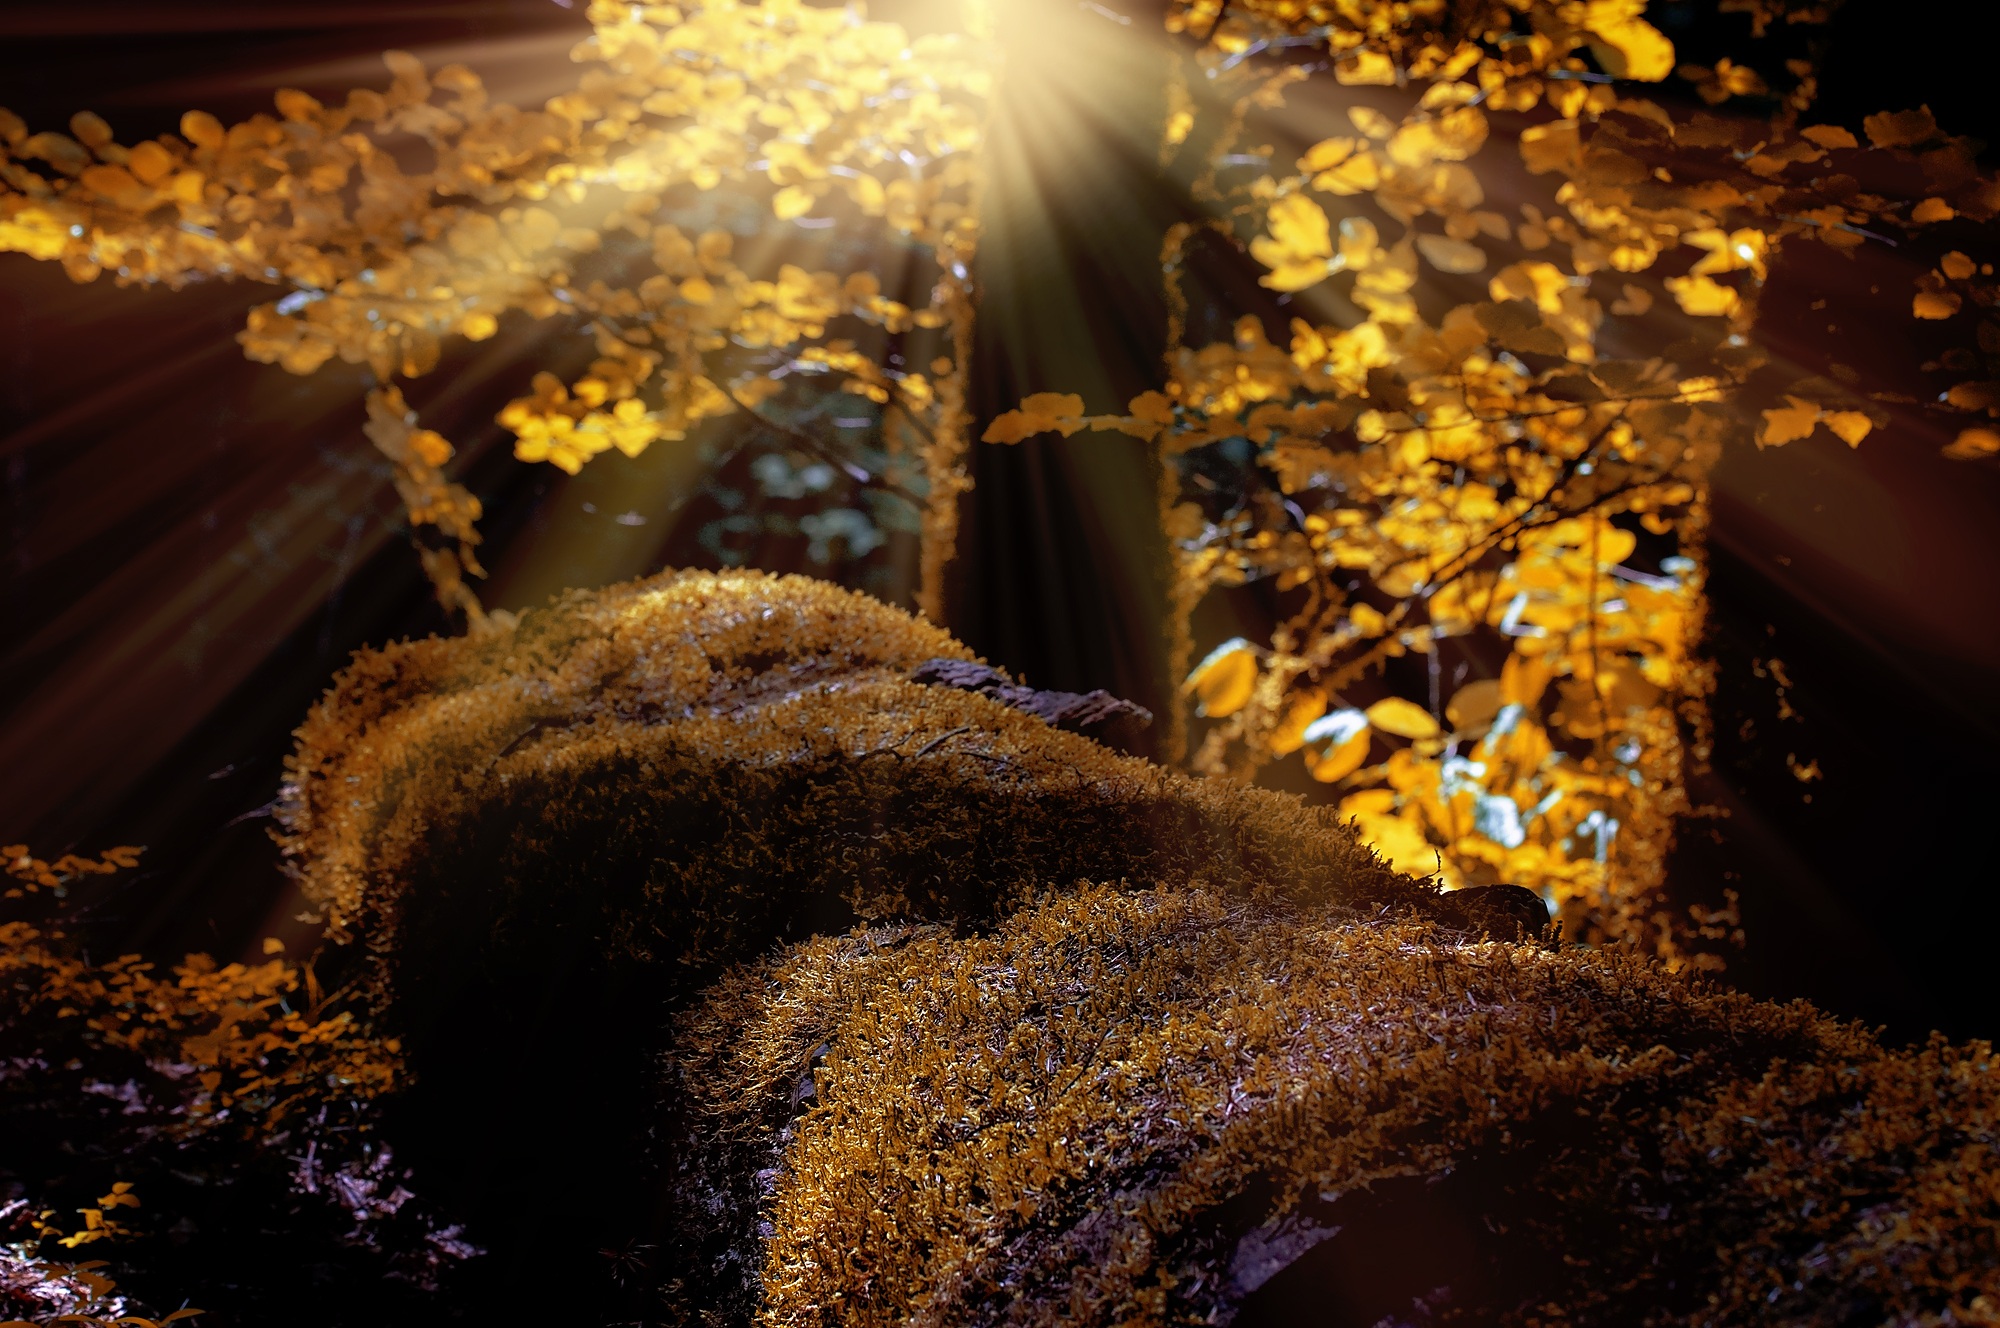 Sunlight illuminates the yellow moss